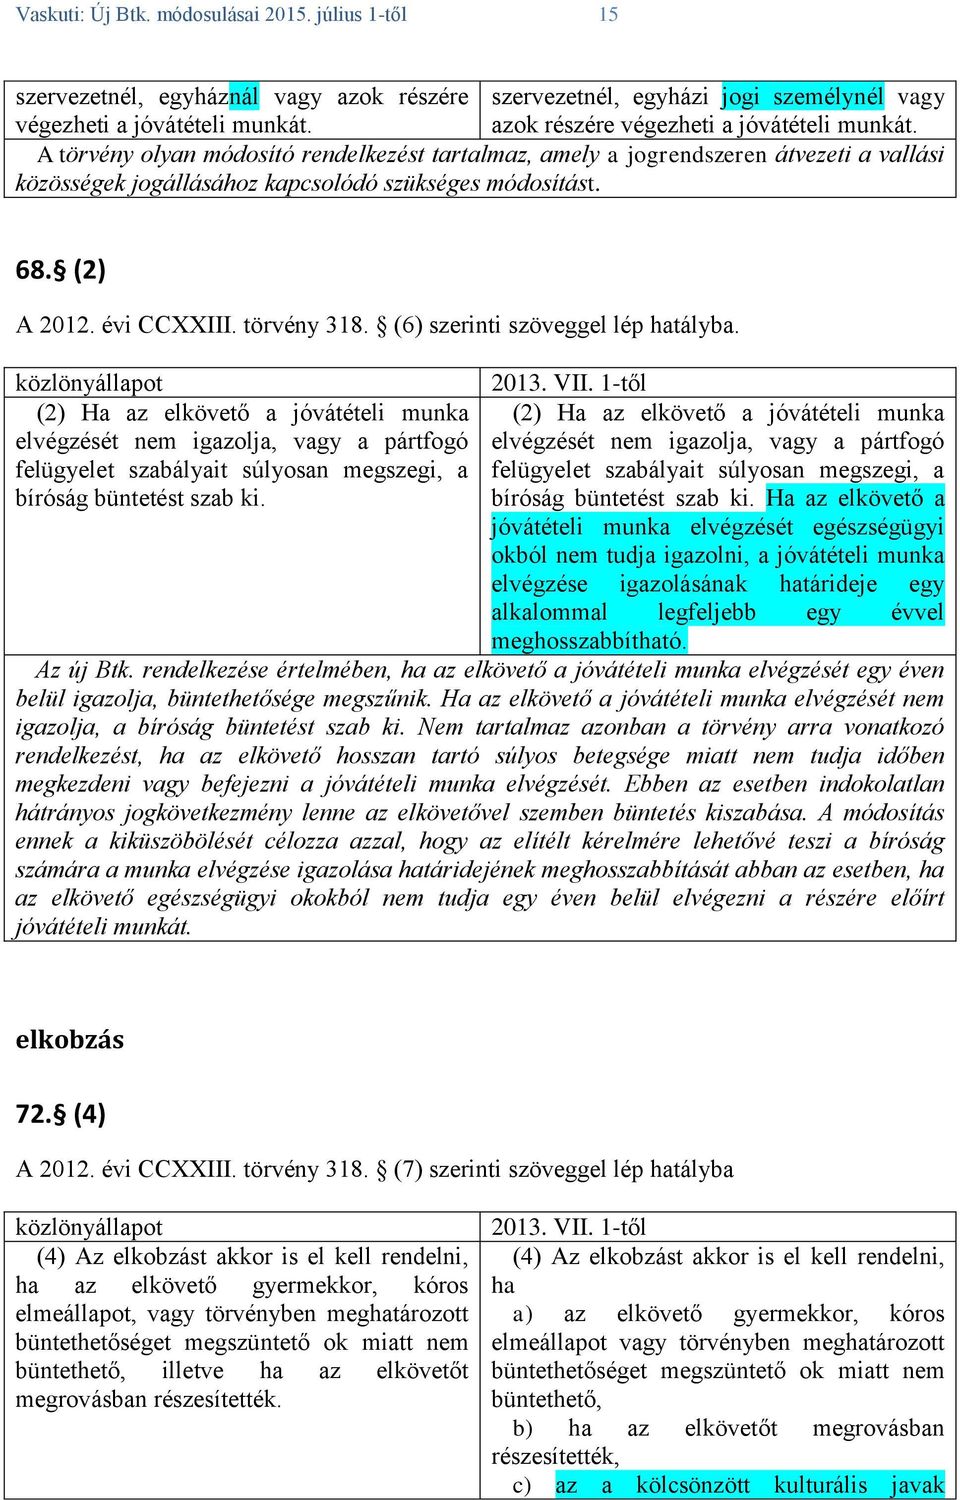 (2) A 2012. évi CCXXIII. törvény 318. (6) szerinti szöveggel lép hatályba.